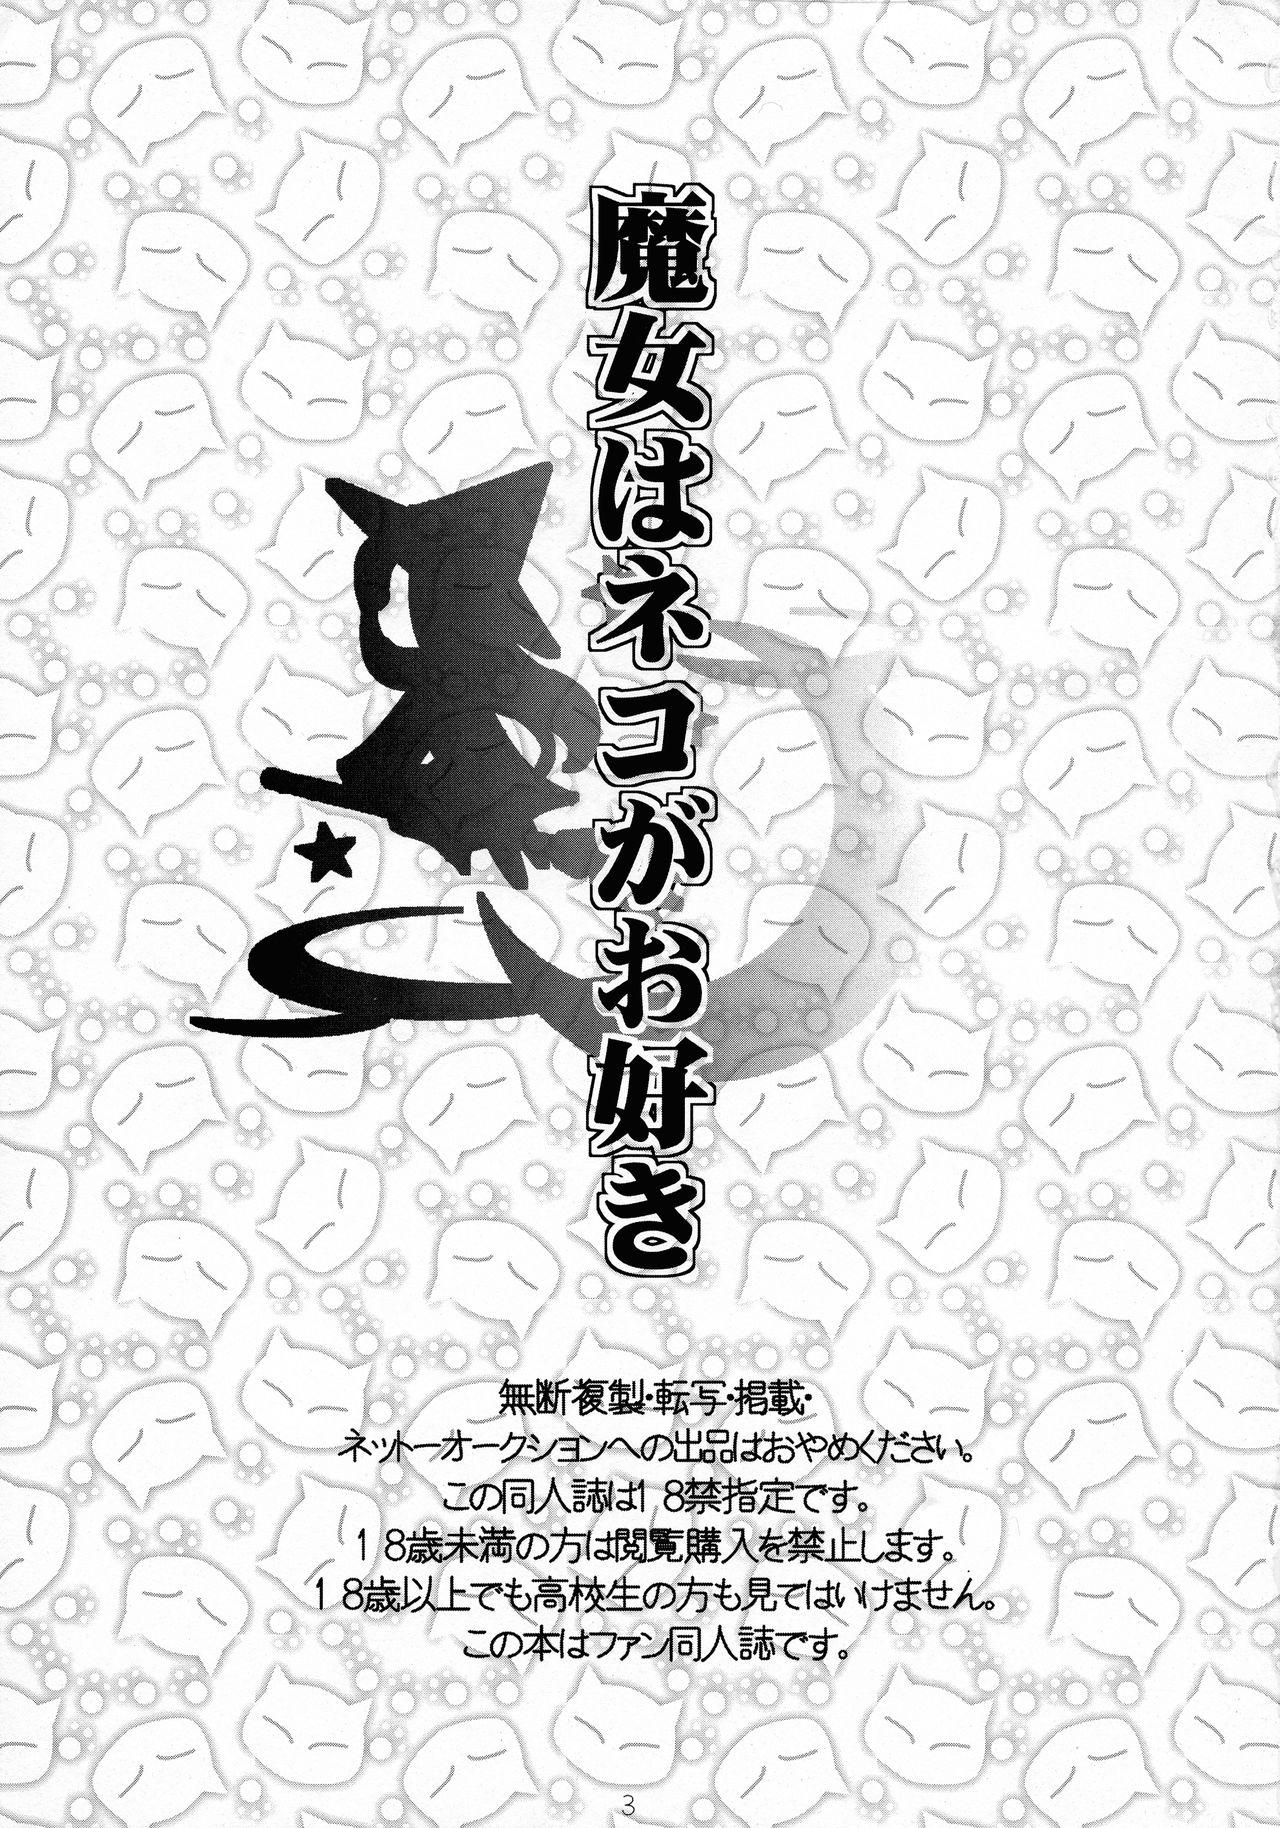 Gros Seins Majo wa Neko ga o suki - Bayonetta Friends - Page 3